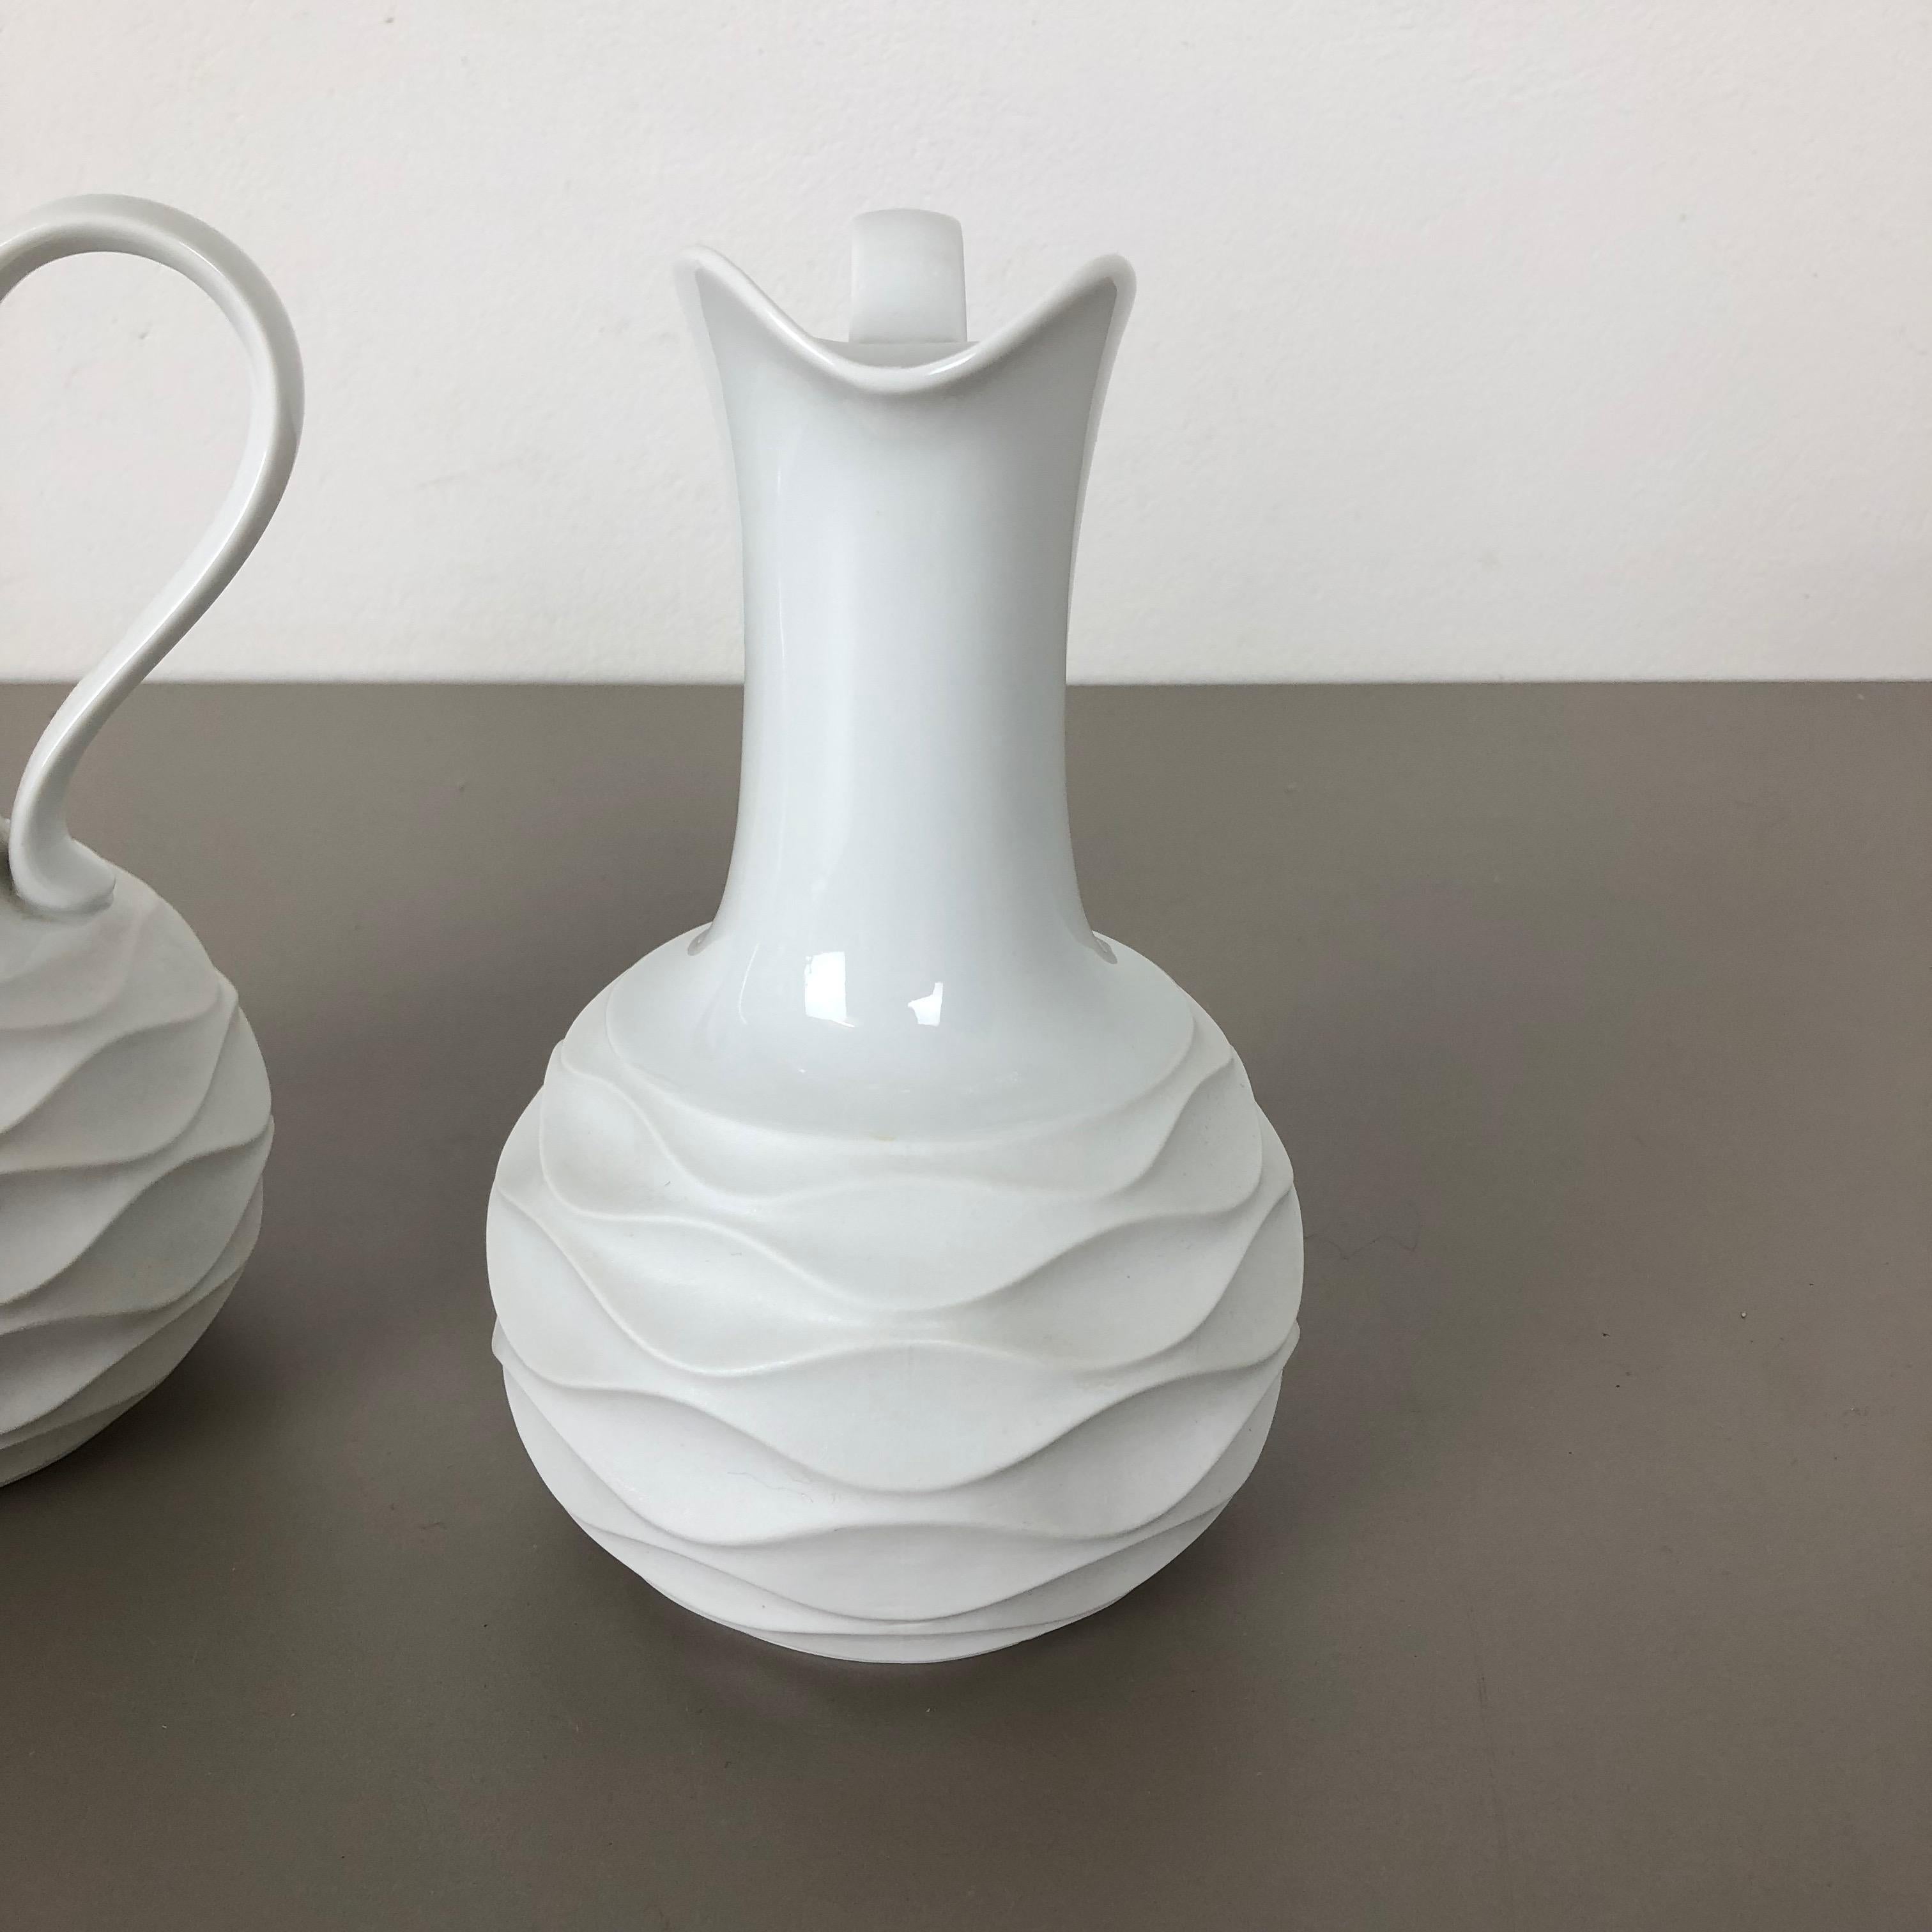 Set of 2 OP Art Biscuit Porcelain Jug Vases by Edelstein Bavaria, Germany, 1970s For Sale 5